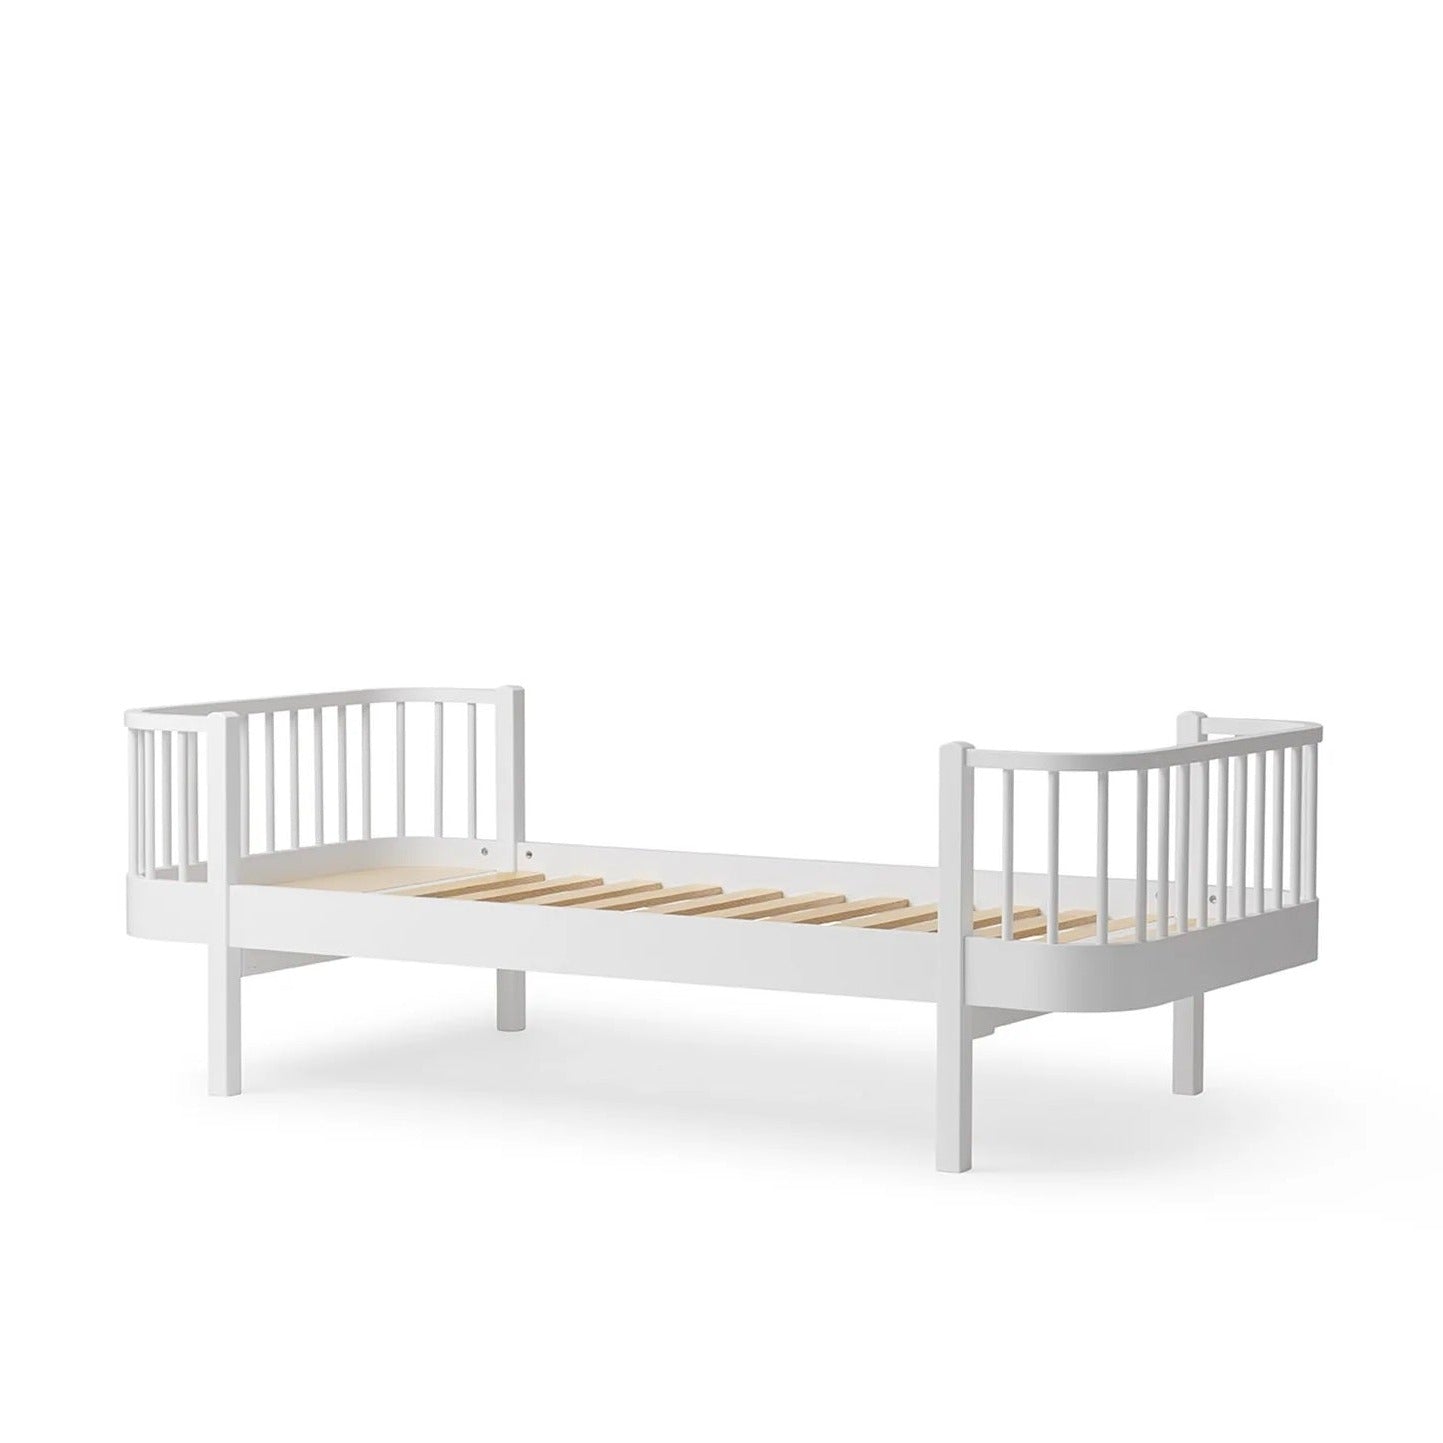 Oliver Furniture Wood Original Bed - White